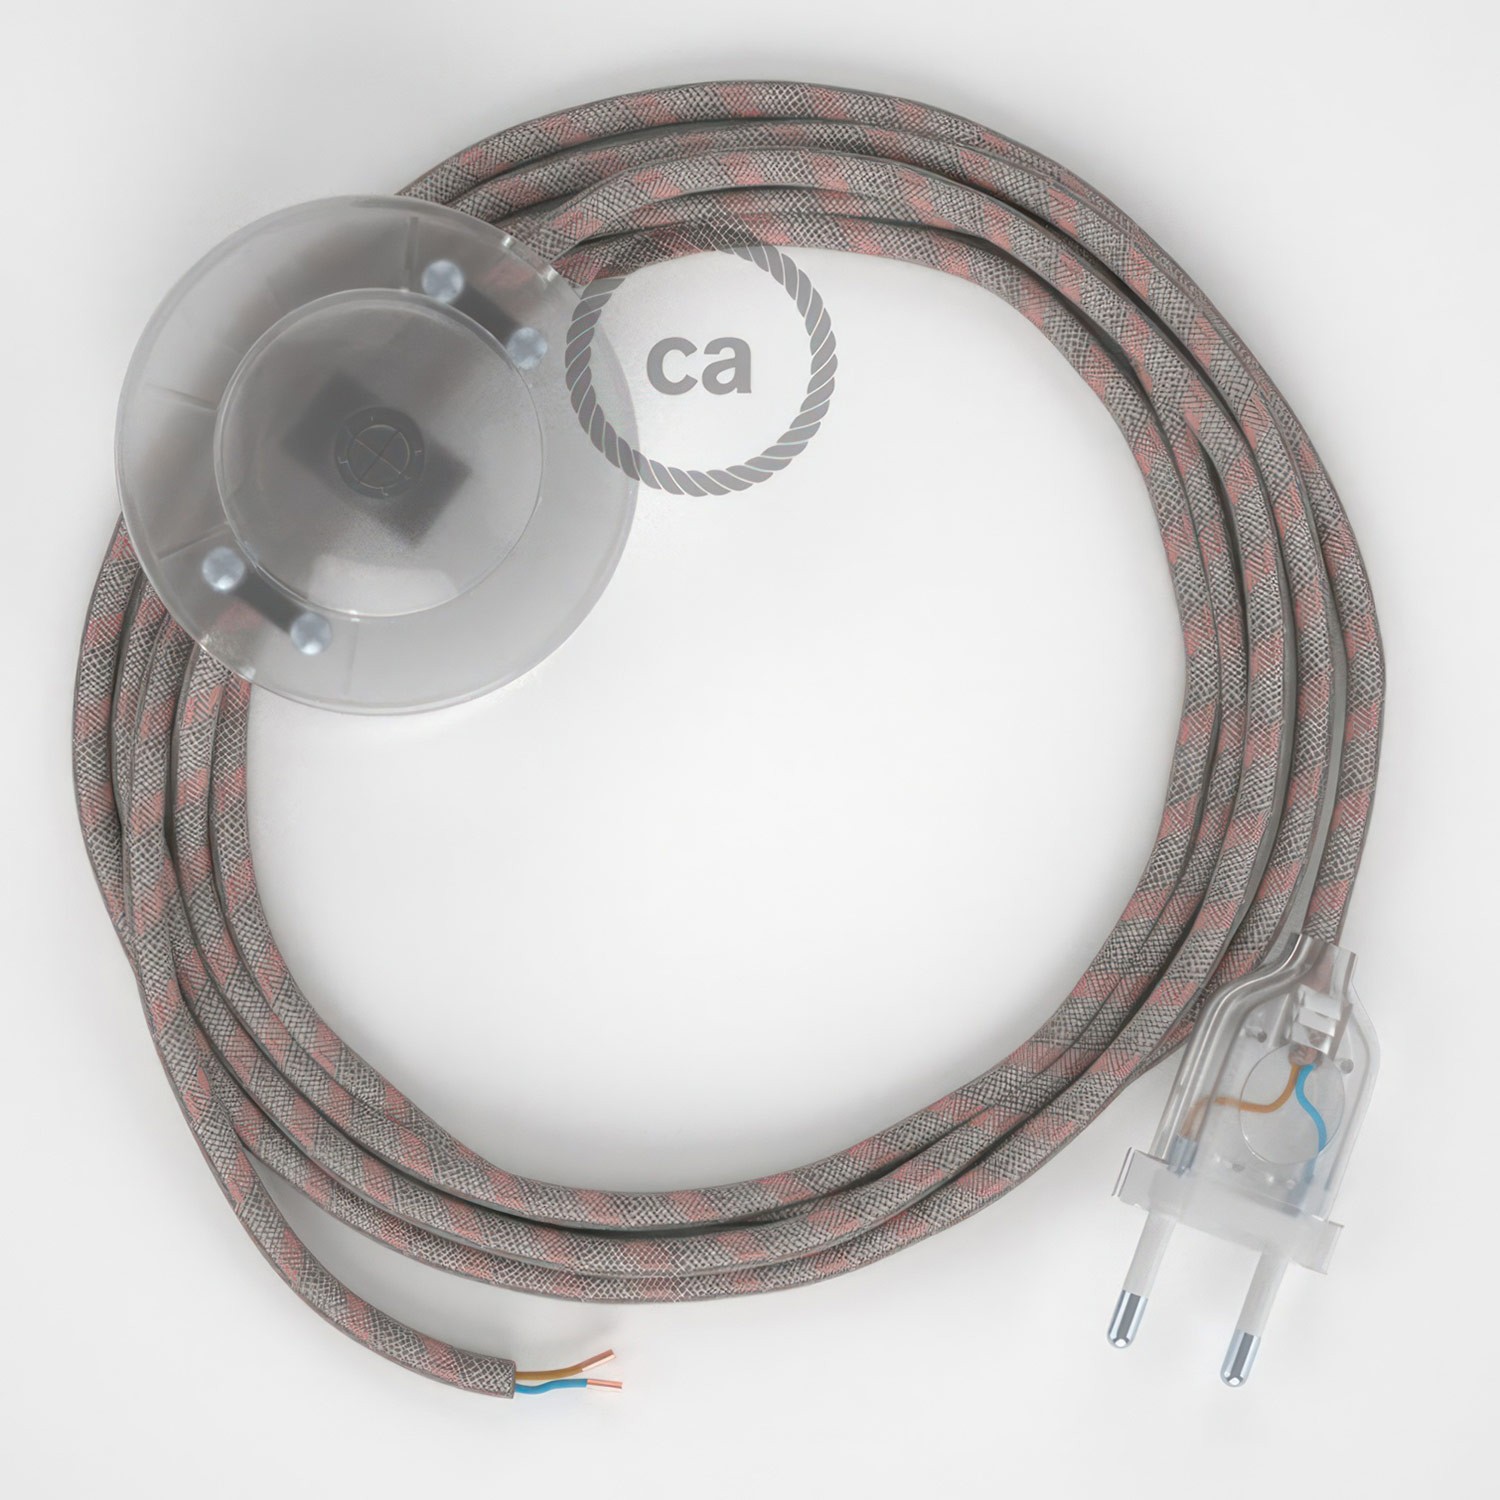 Cableado para lámpara de pie, cable RD51 Stripes Rosa Viejo 3 m. Elige tu el color de la clavija y del interruptor!